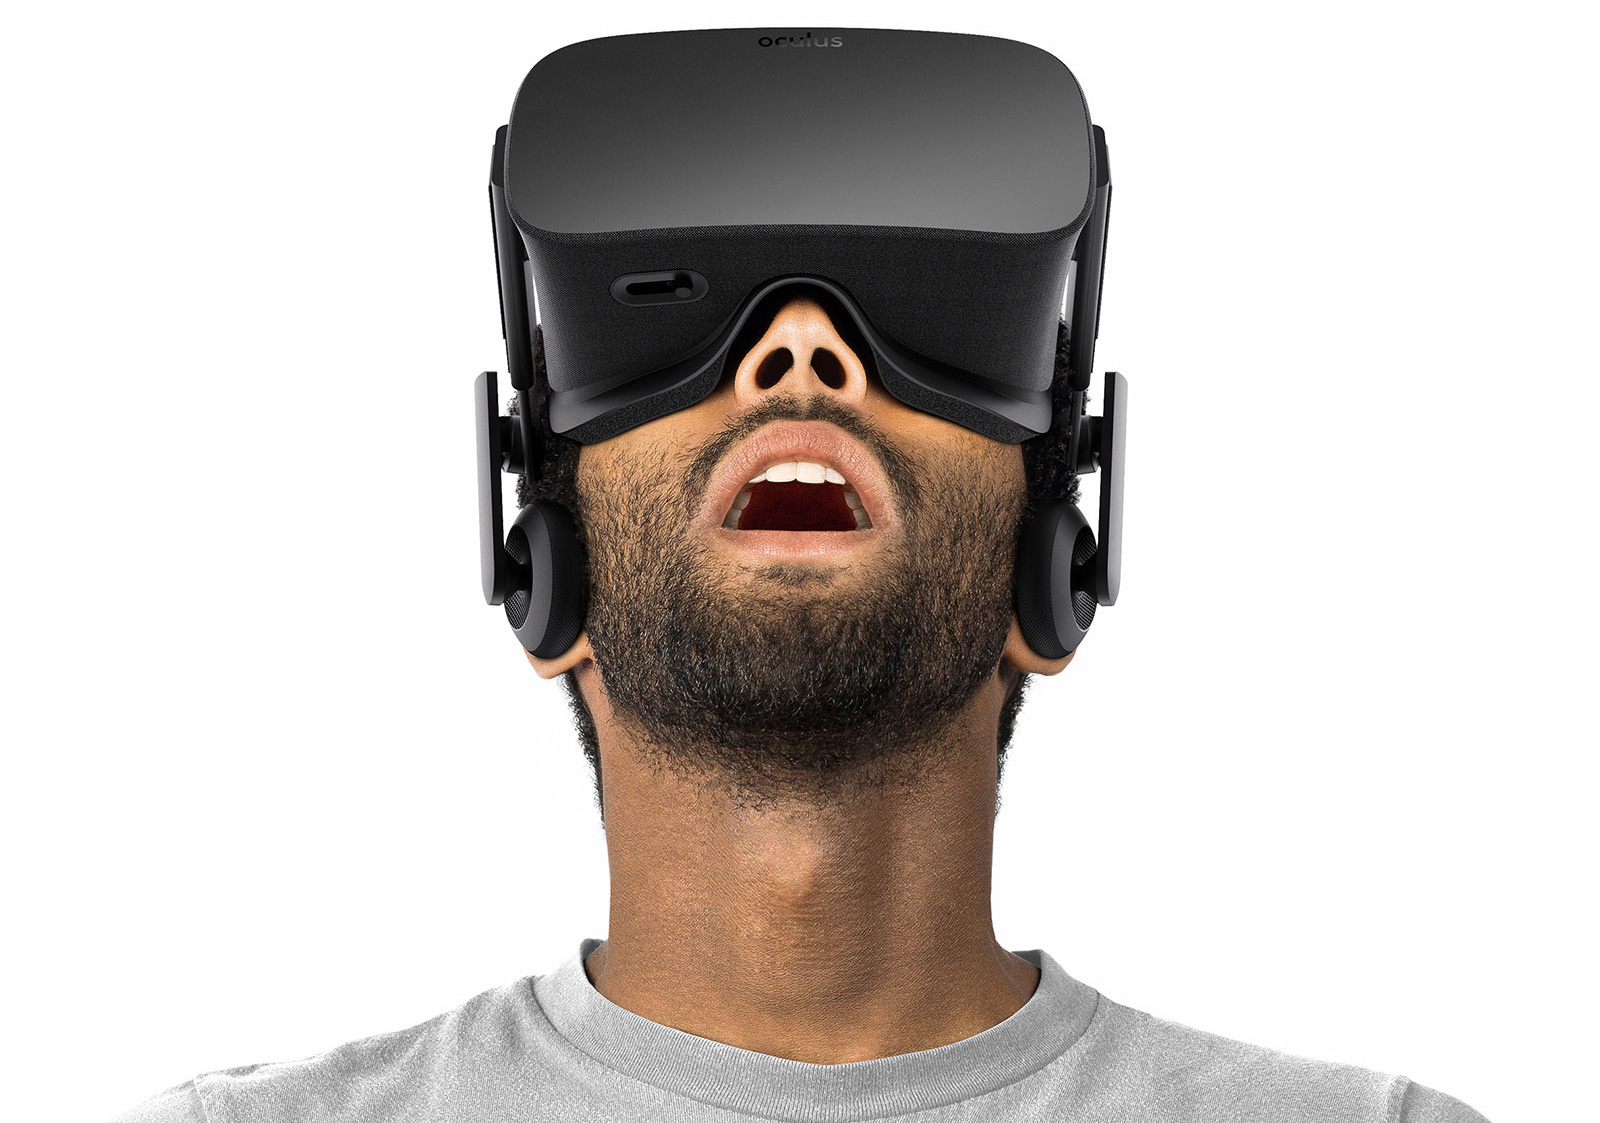 Immagine pubblicata in relazione al seguente contenuto: Oculus: l'headset VR Rift  prenotabile on line dal 6 gennaio | Nome immagine: news23597_Oculus-Rift_1.jpg